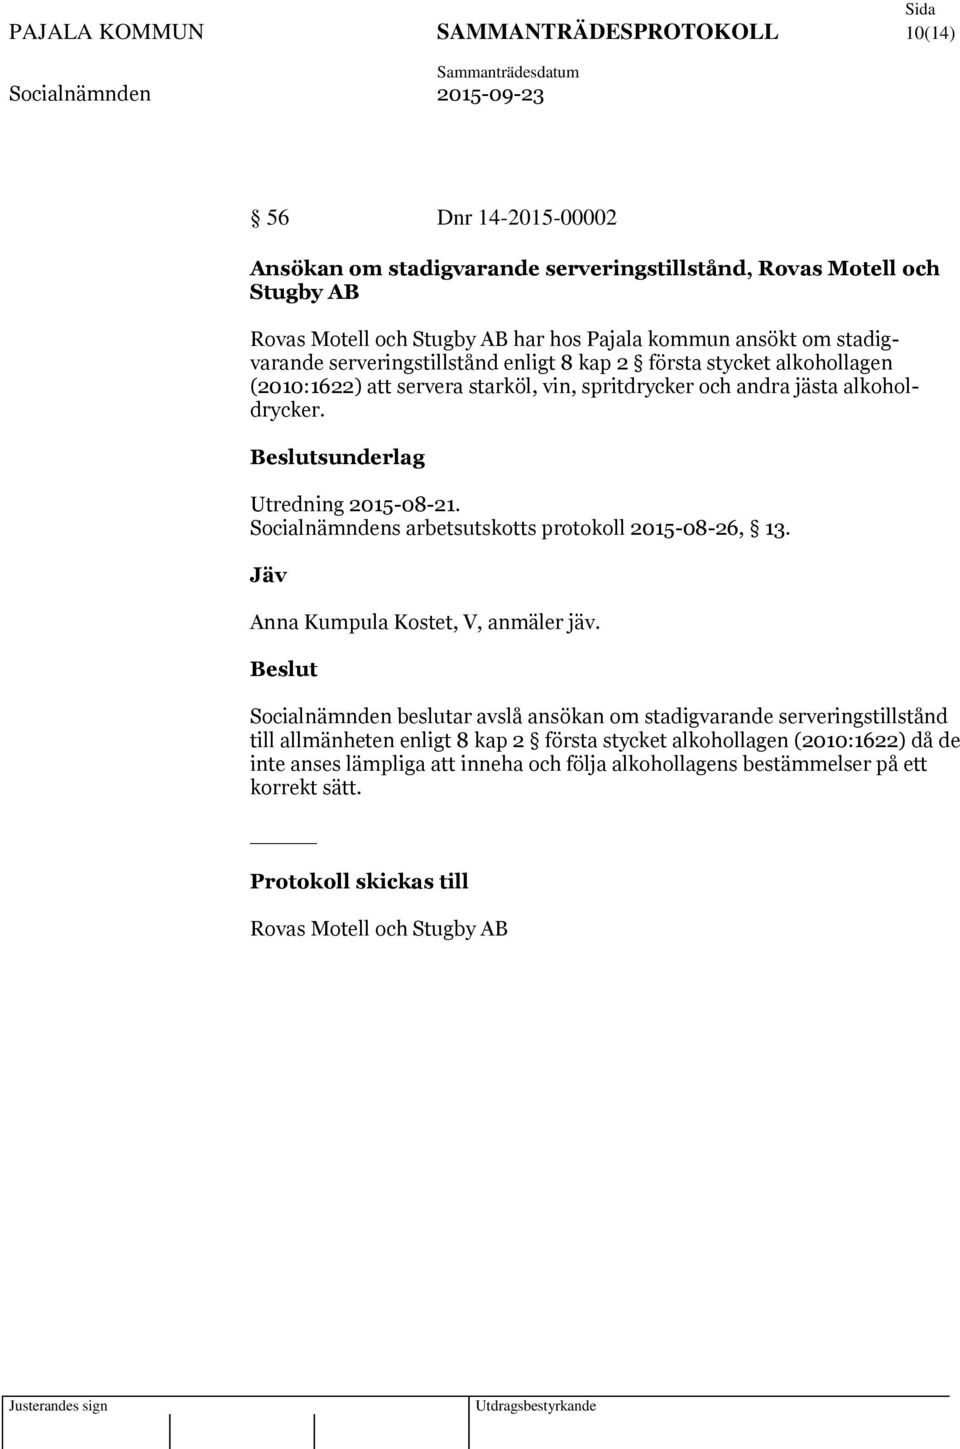 Socialnämndens arbetsutskotts protokoll 2015-08-26, 13. Jäv Anna Kumpula Kostet, V, anmäler jäv.